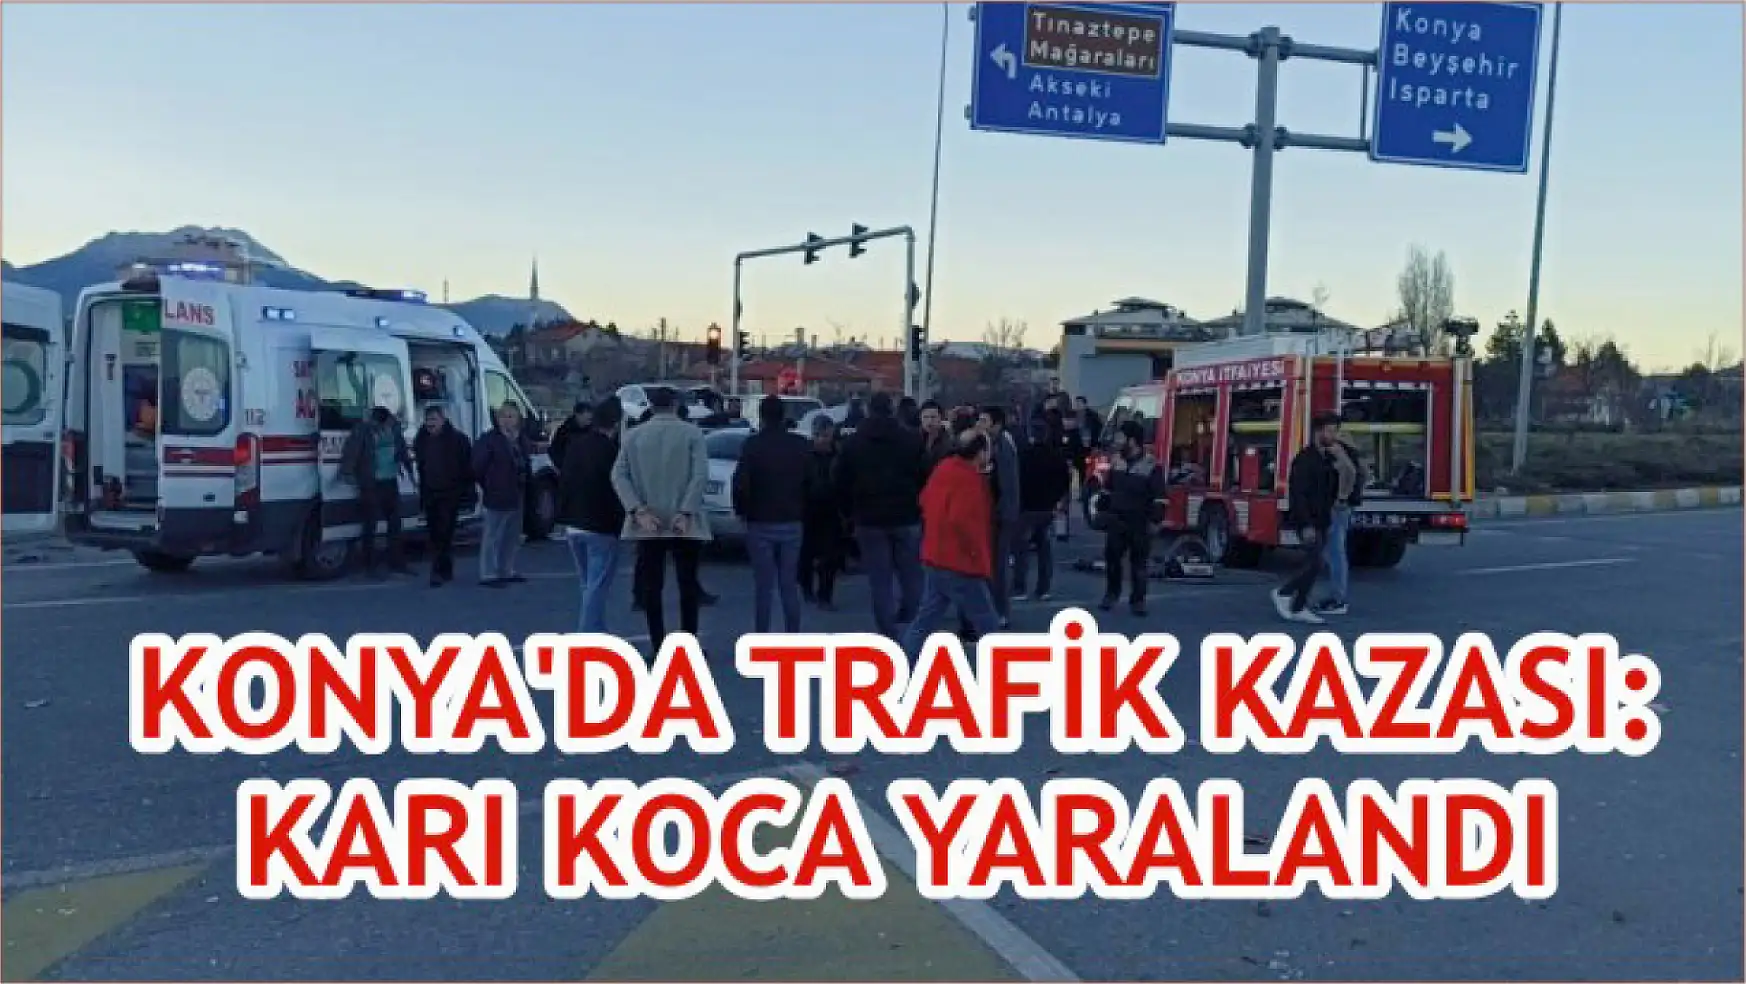 Konya'da trafik kazası: Karı koca yaralandı!